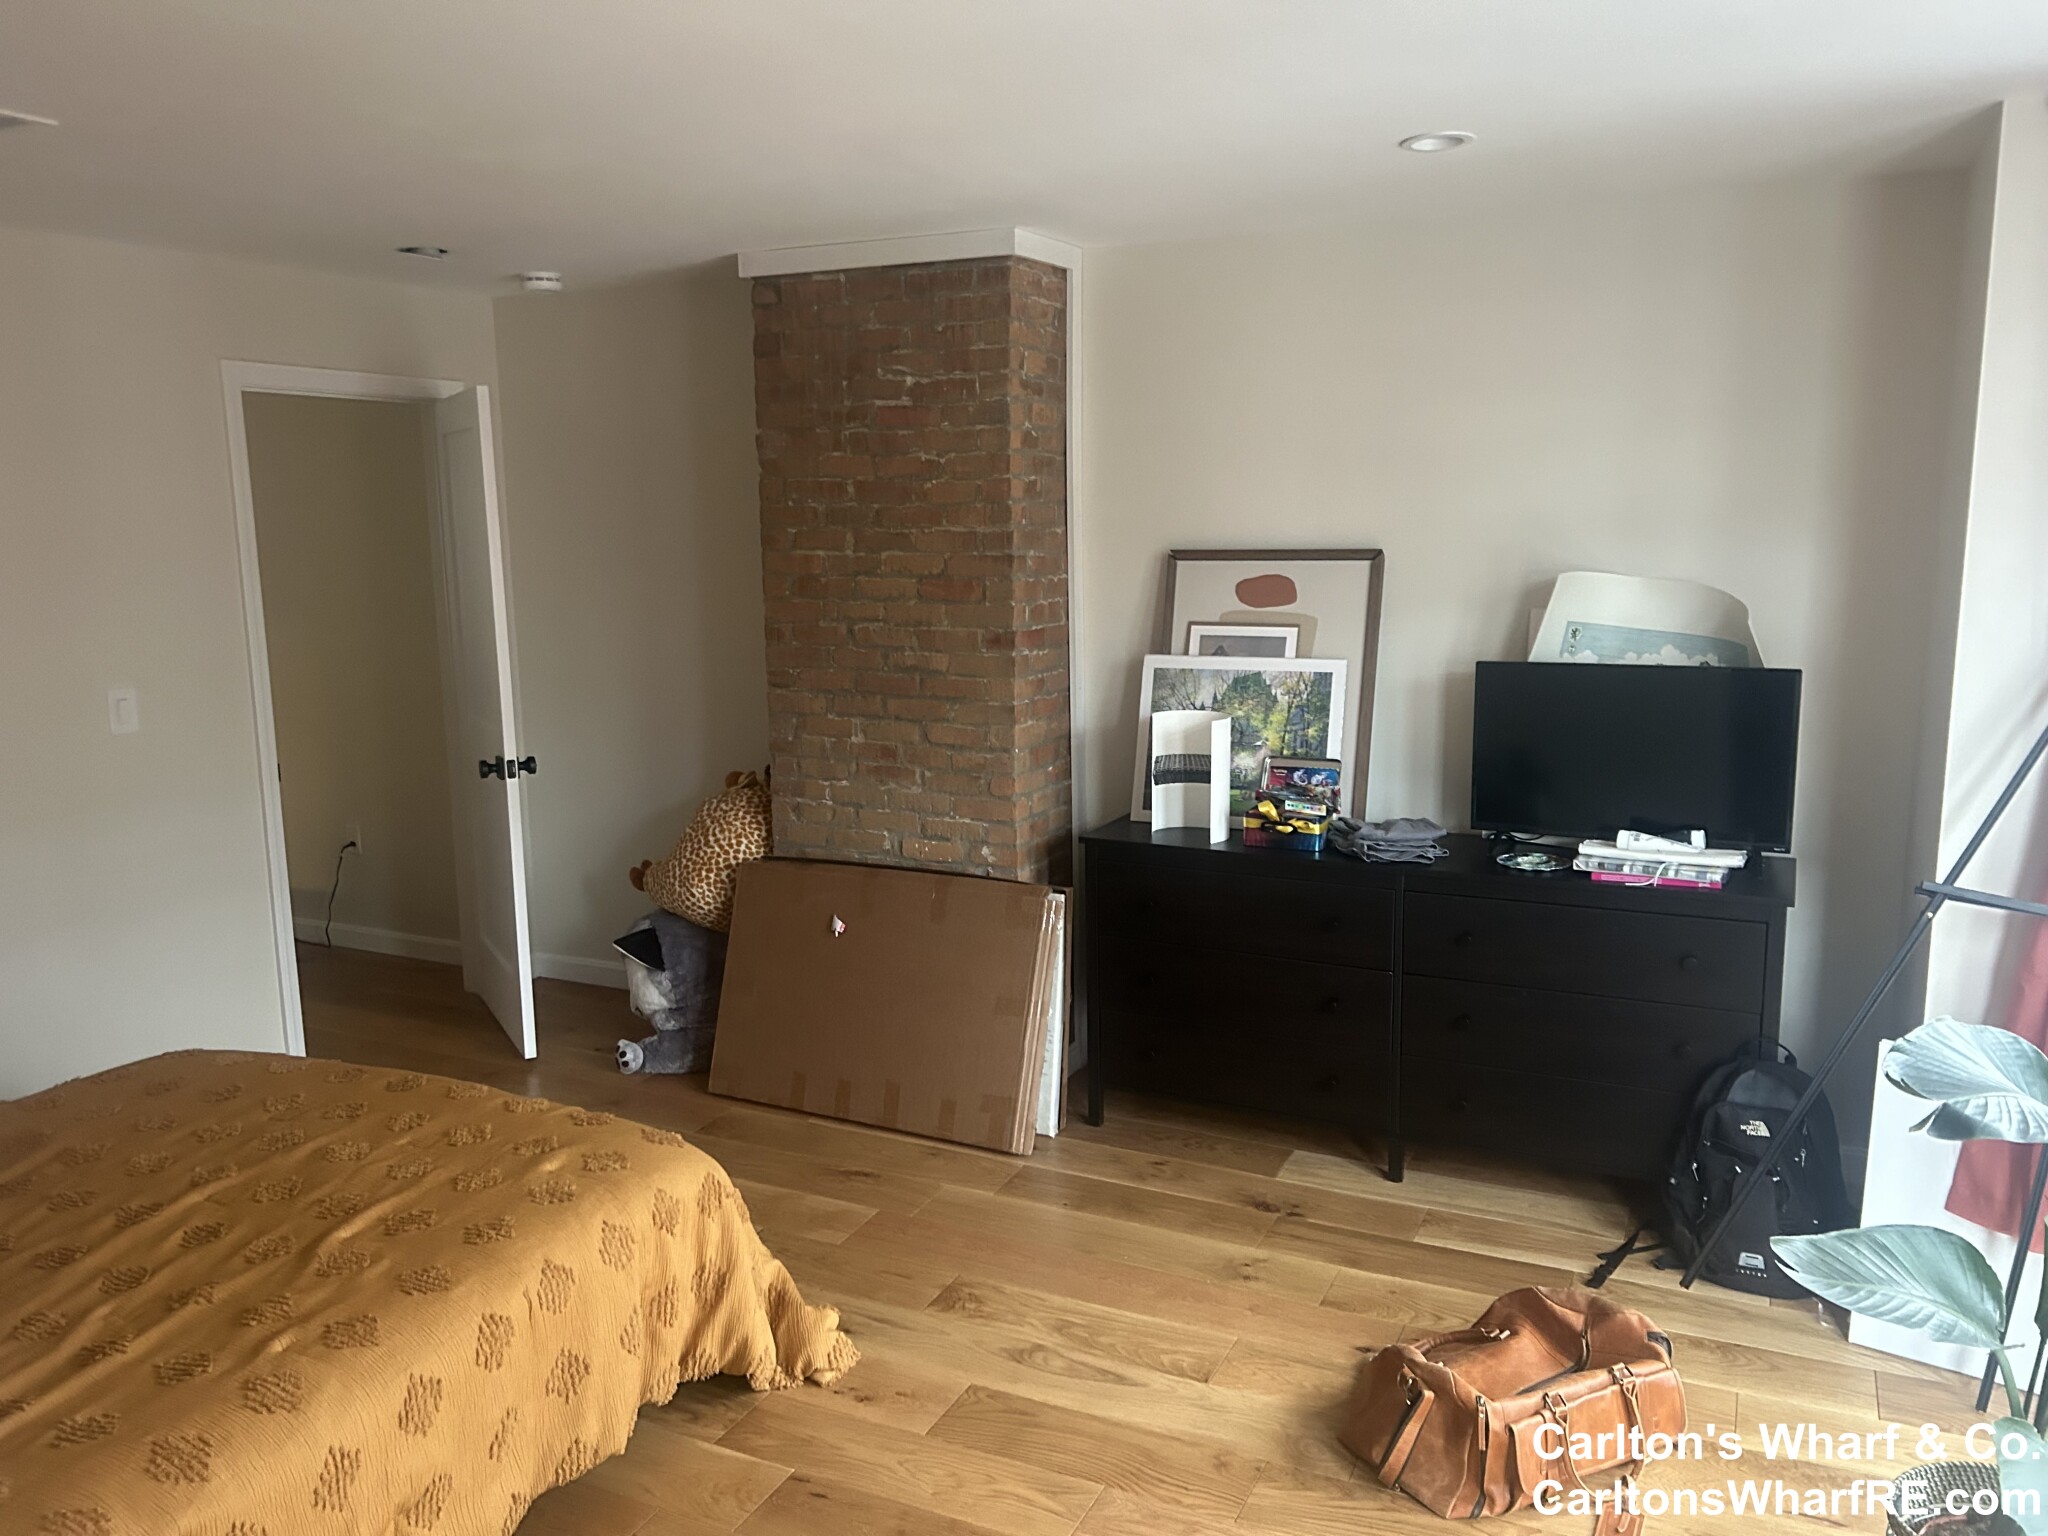 Photos of apartment on Monmouth St.,Boston MA 02128